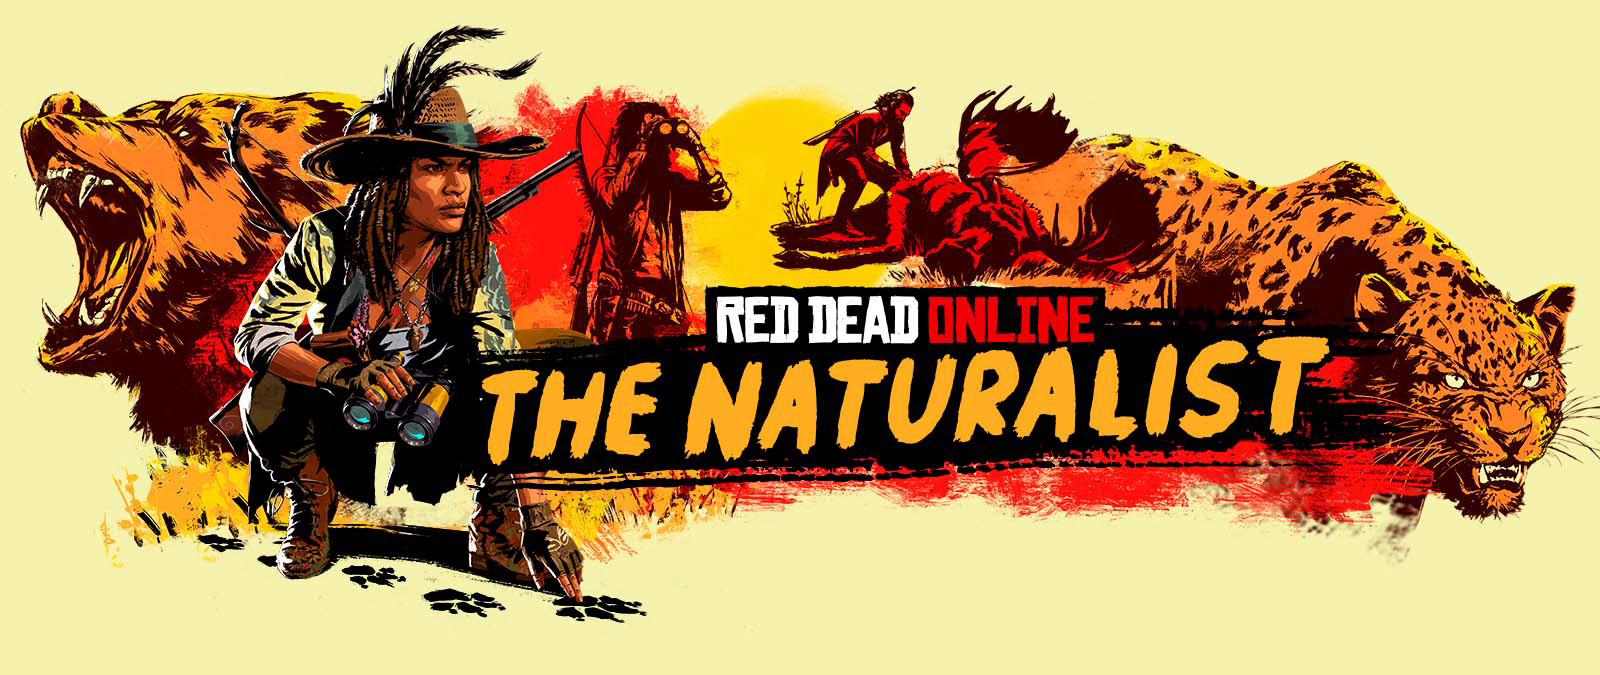 Red Dead Online. The Naturalist. Karakterer sporer og jakter på store dyr.